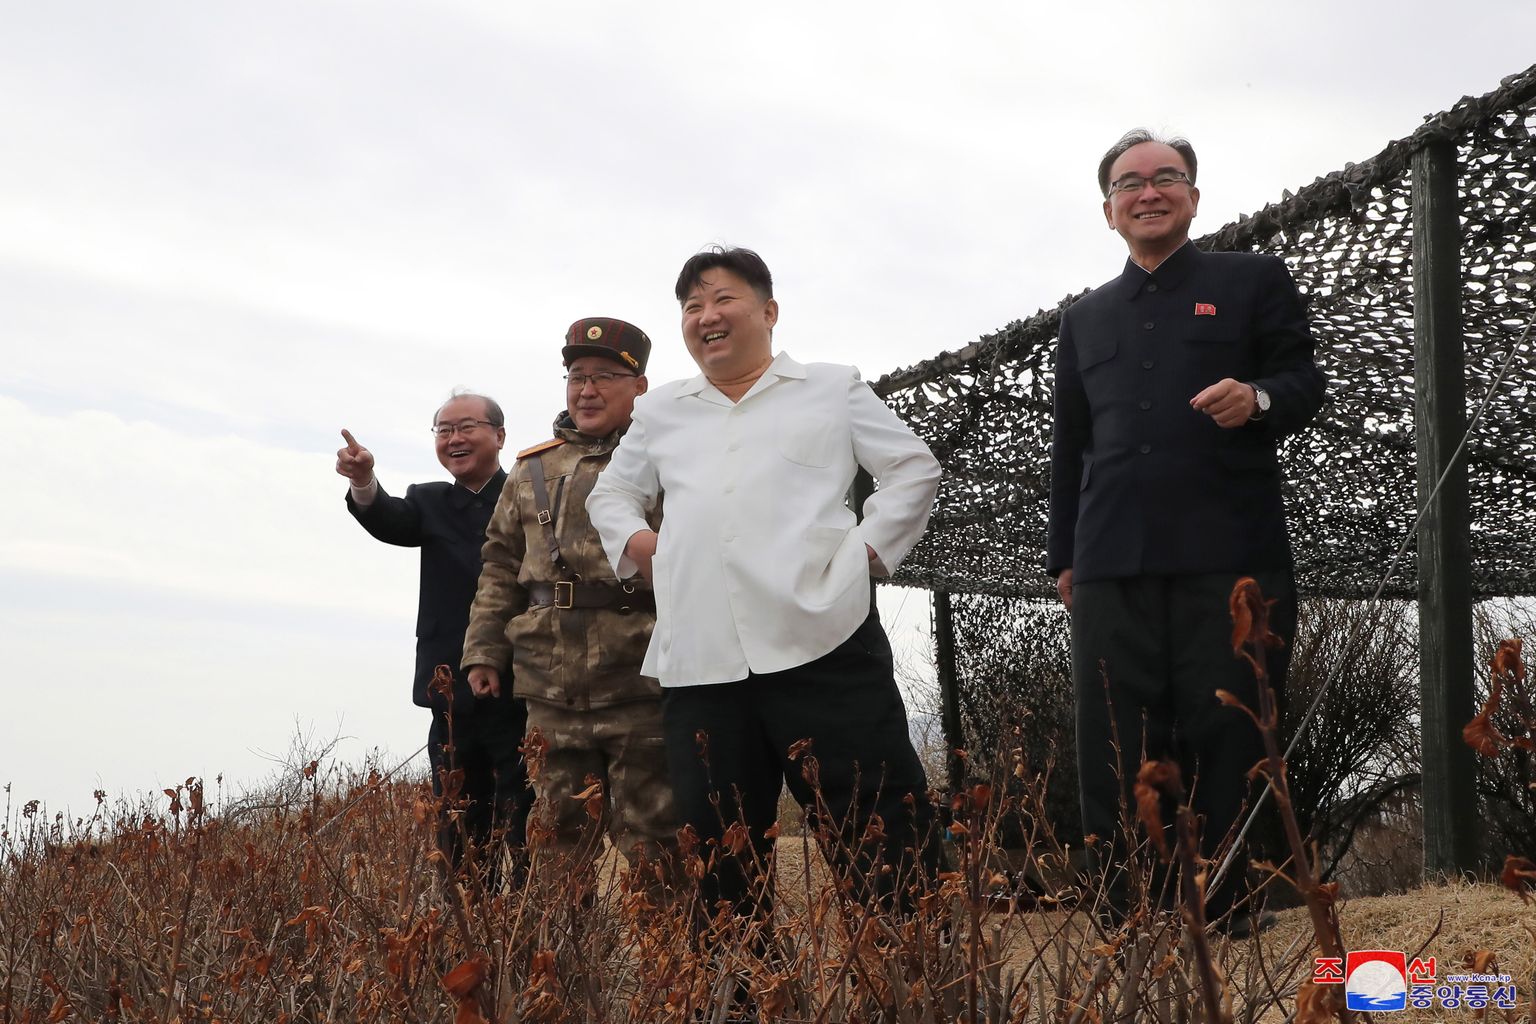 Põhja-Korea liider Kim Jong-un takseerib tiibraketikatsetust Lõuna-Hamgyongi provintsis Jakdo-dongis 22. märtsil. Põhja-Korea riigimeedia teatel katsetati kaht Hwasai-1 ja kaht Hwasai-2 strateegilist tiibraketti, mis olid varustatud testtuumapeaga.